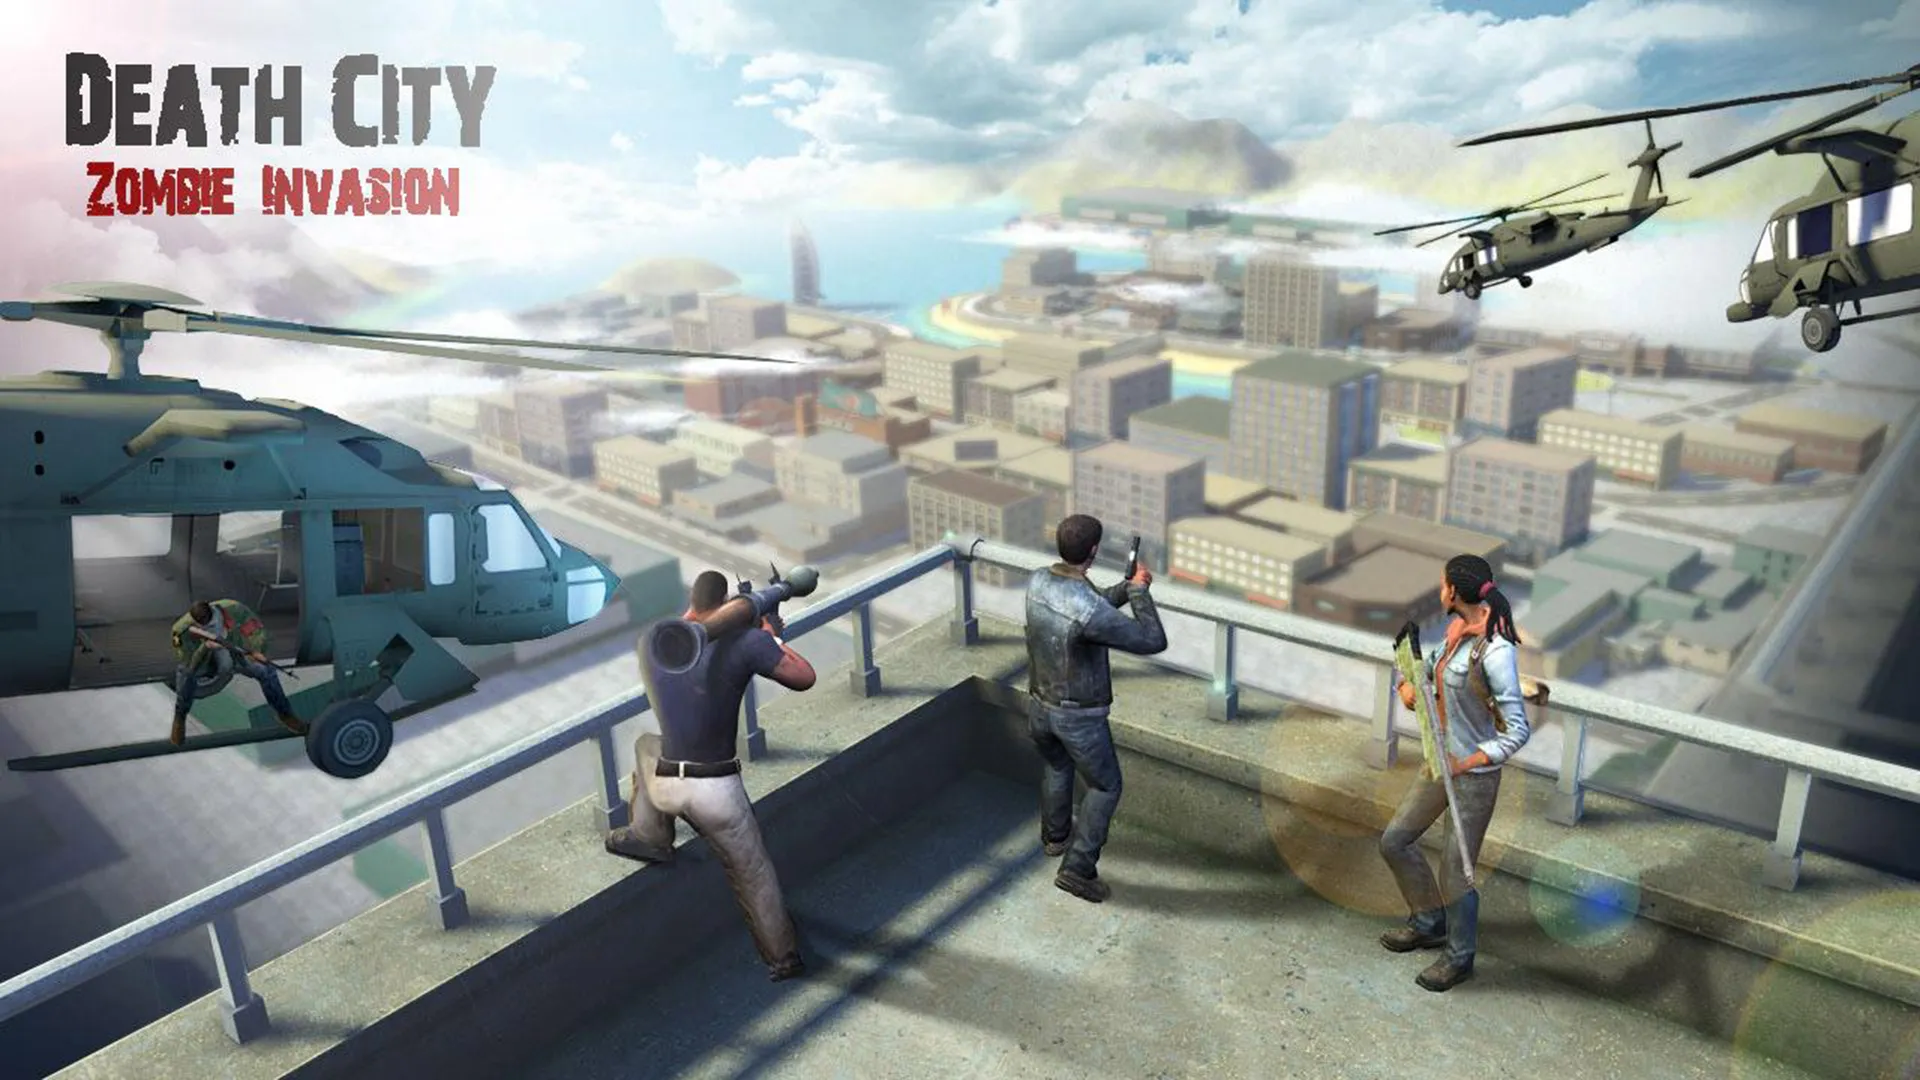 سه نفر روی پشت بام در حال شلیک در محیط بازی Death city